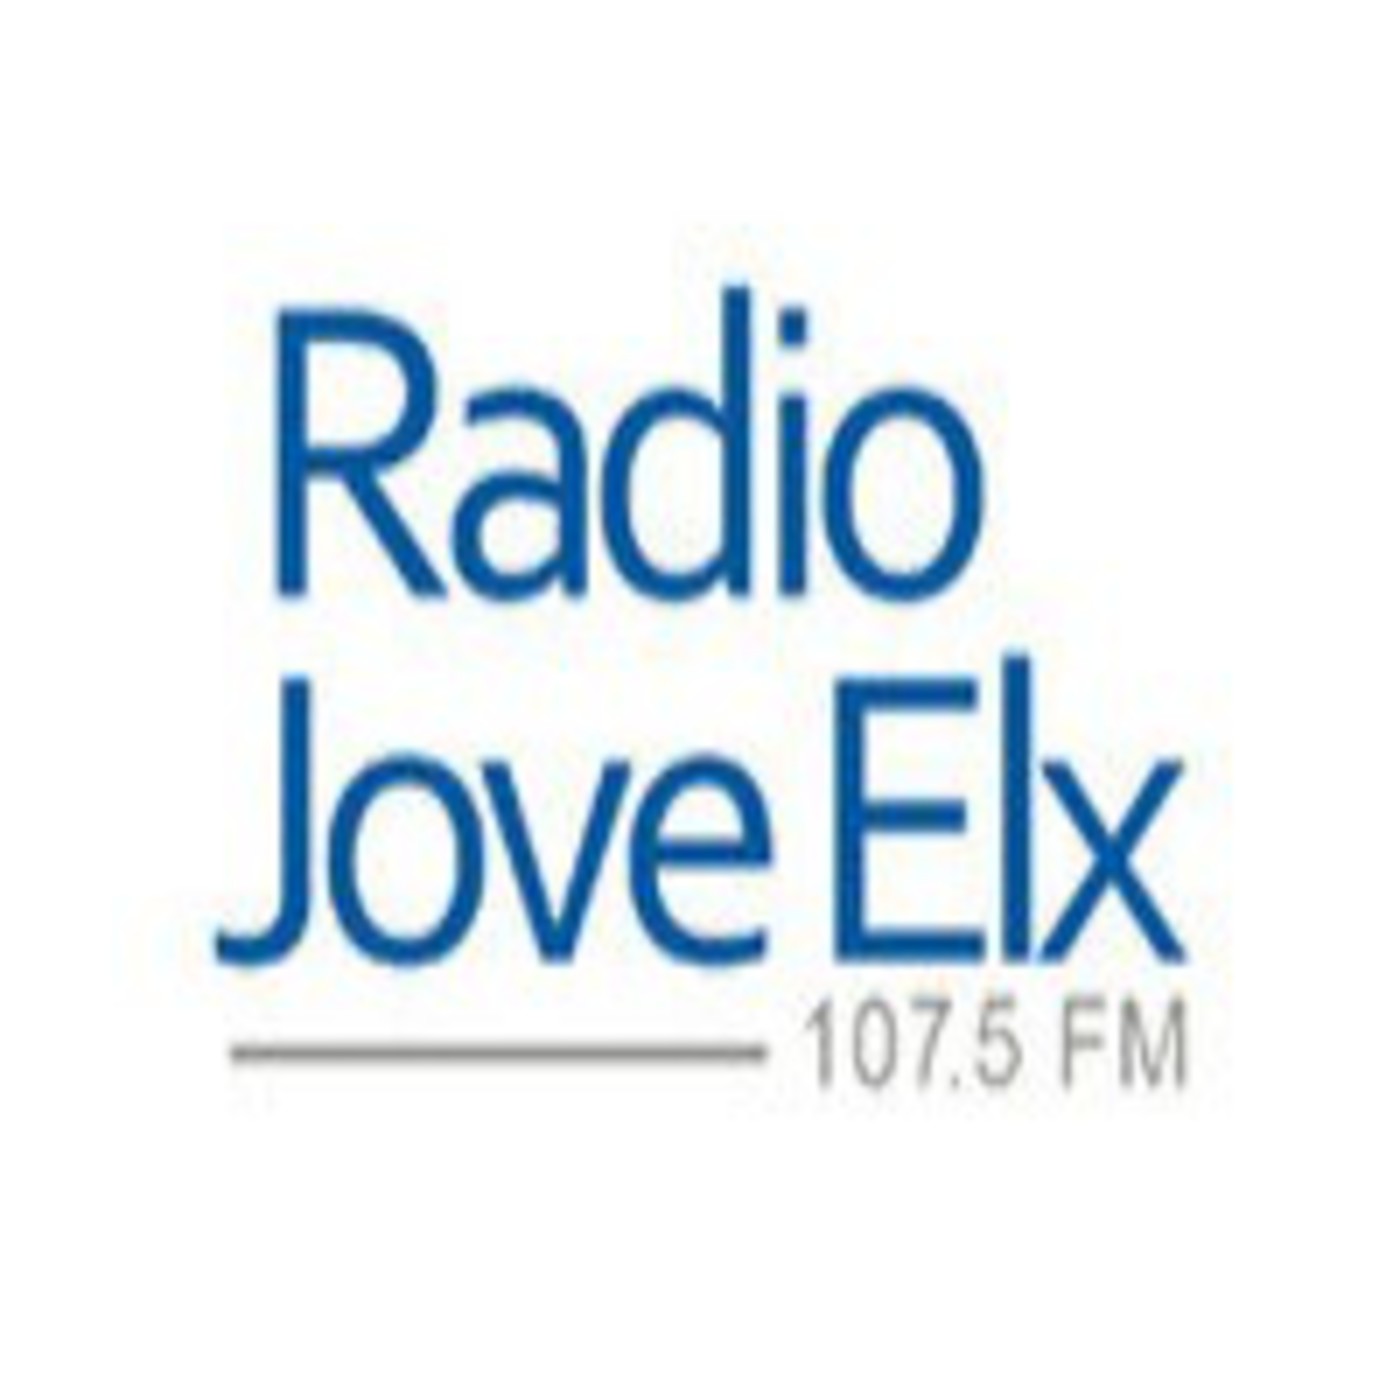 Podcast Radio Jove Elx 107.5 Fm:Radio Jove Elx